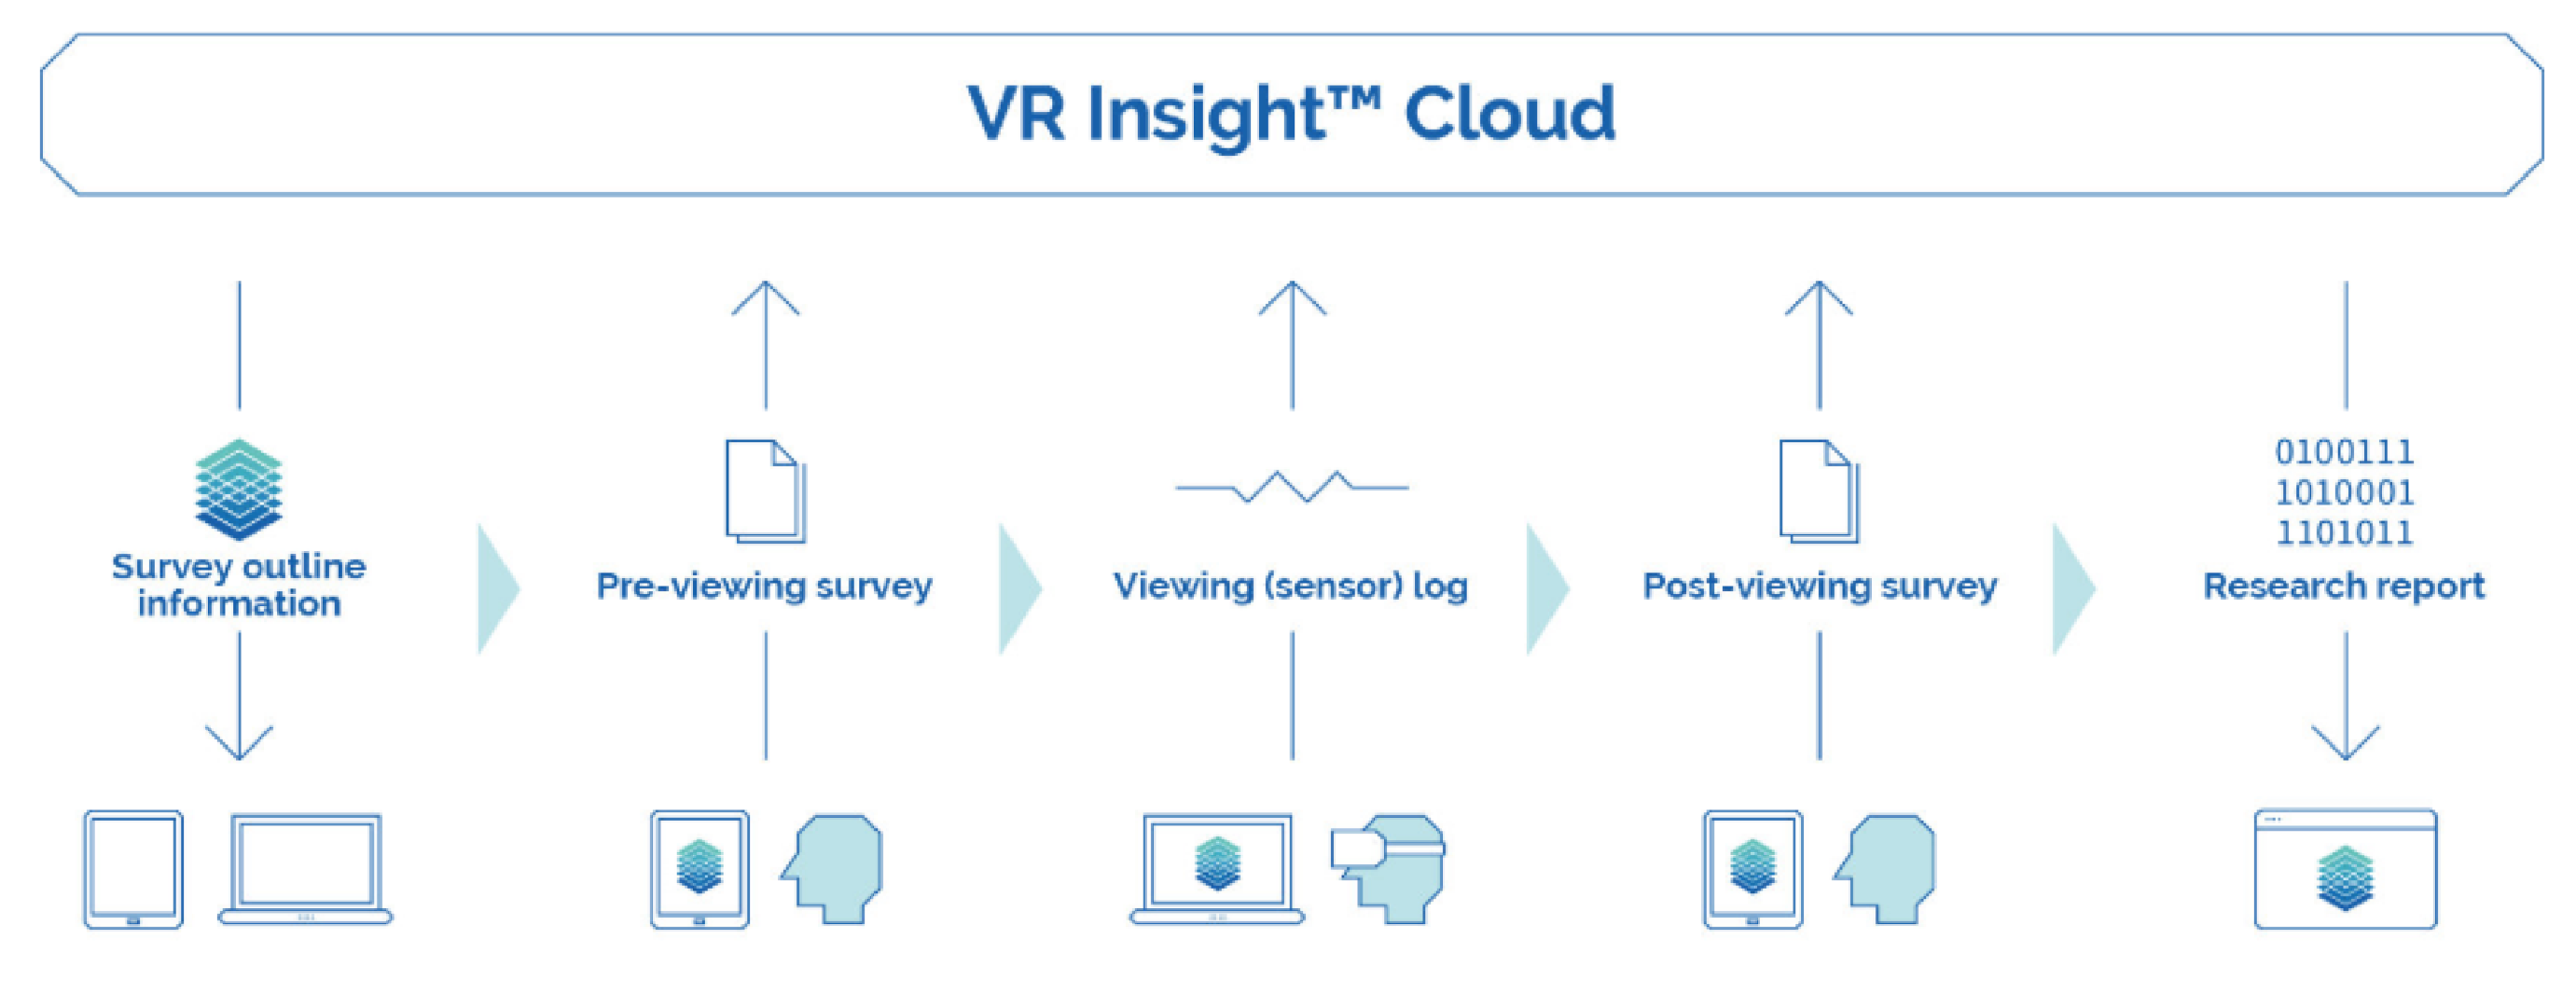 VR Insight Cloud Diagram